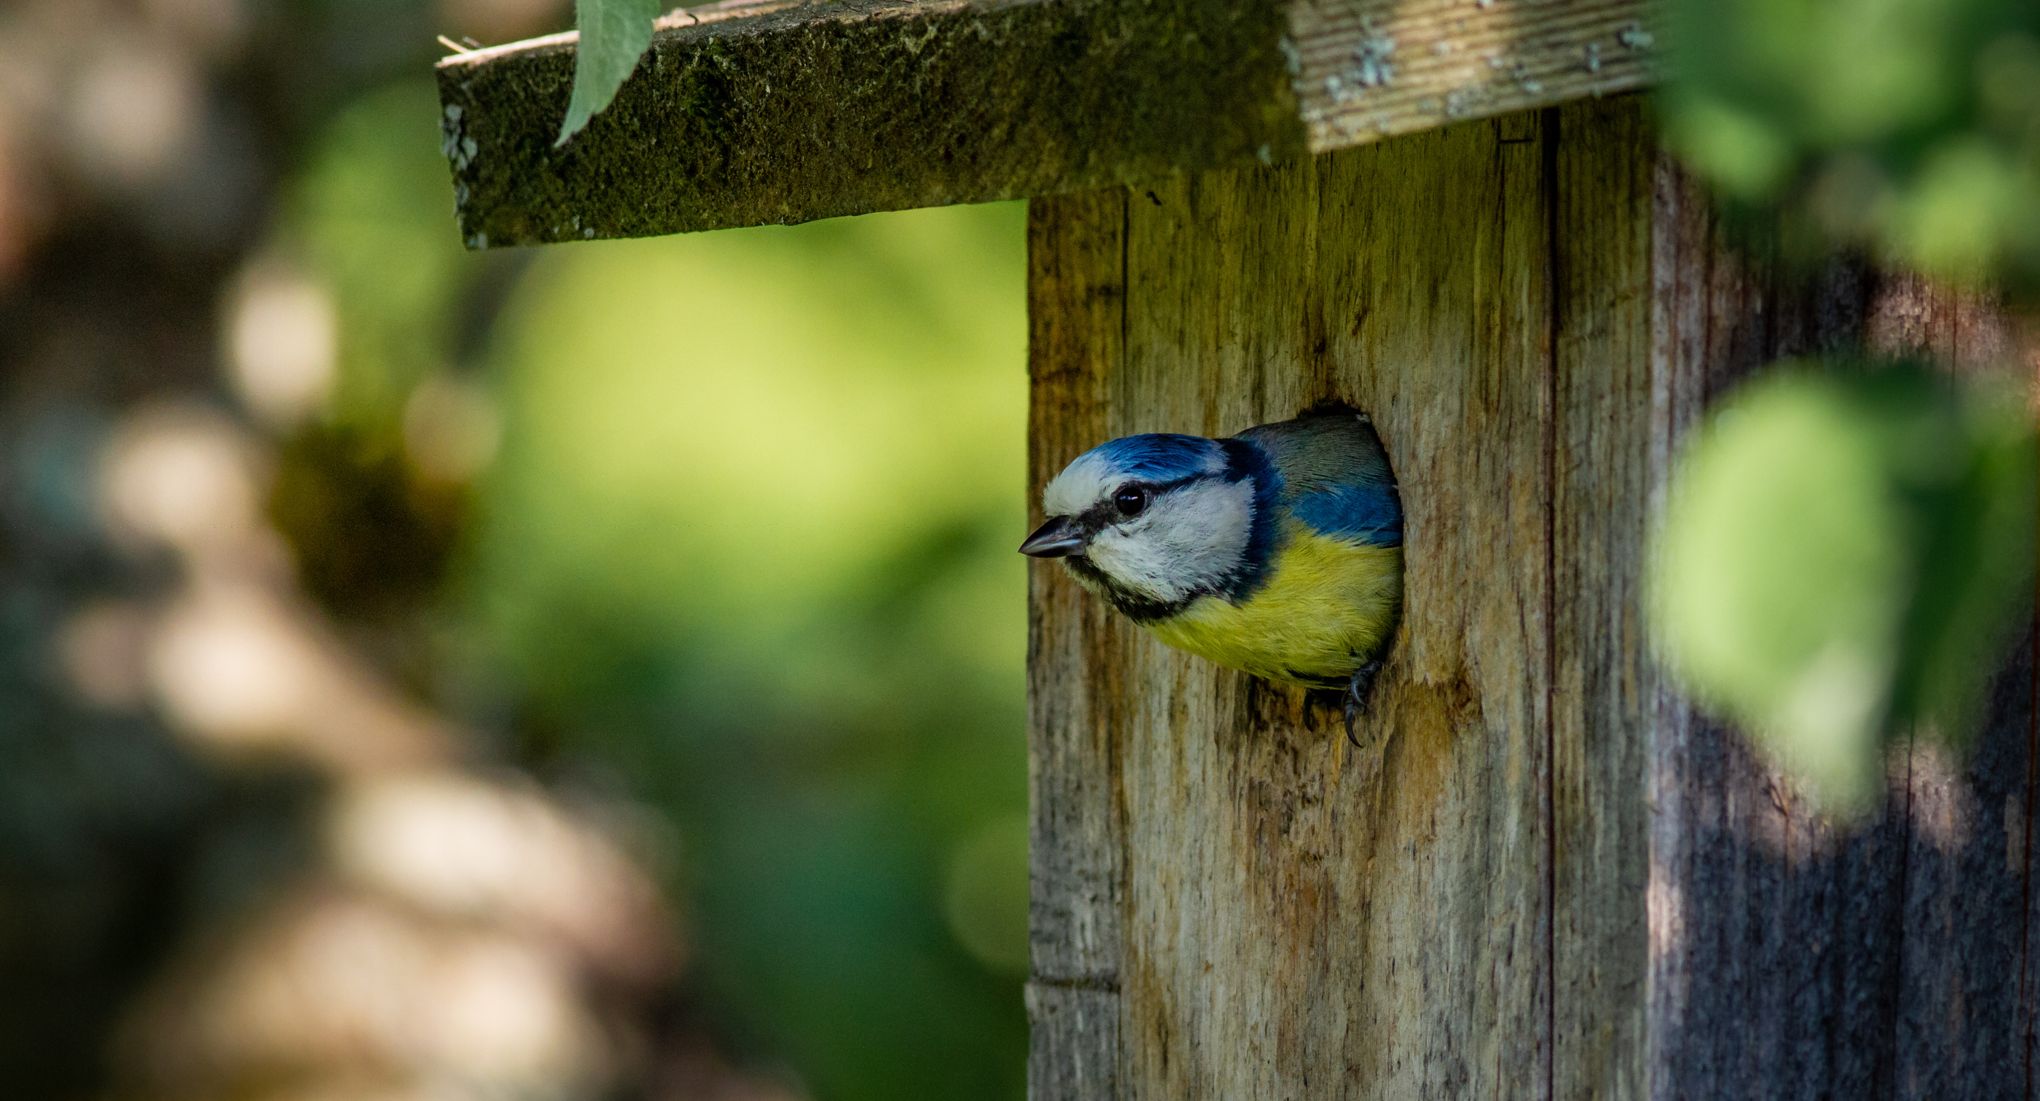 Placer des nichoirs pour les oiseaux au jardin : une foule de conseils 